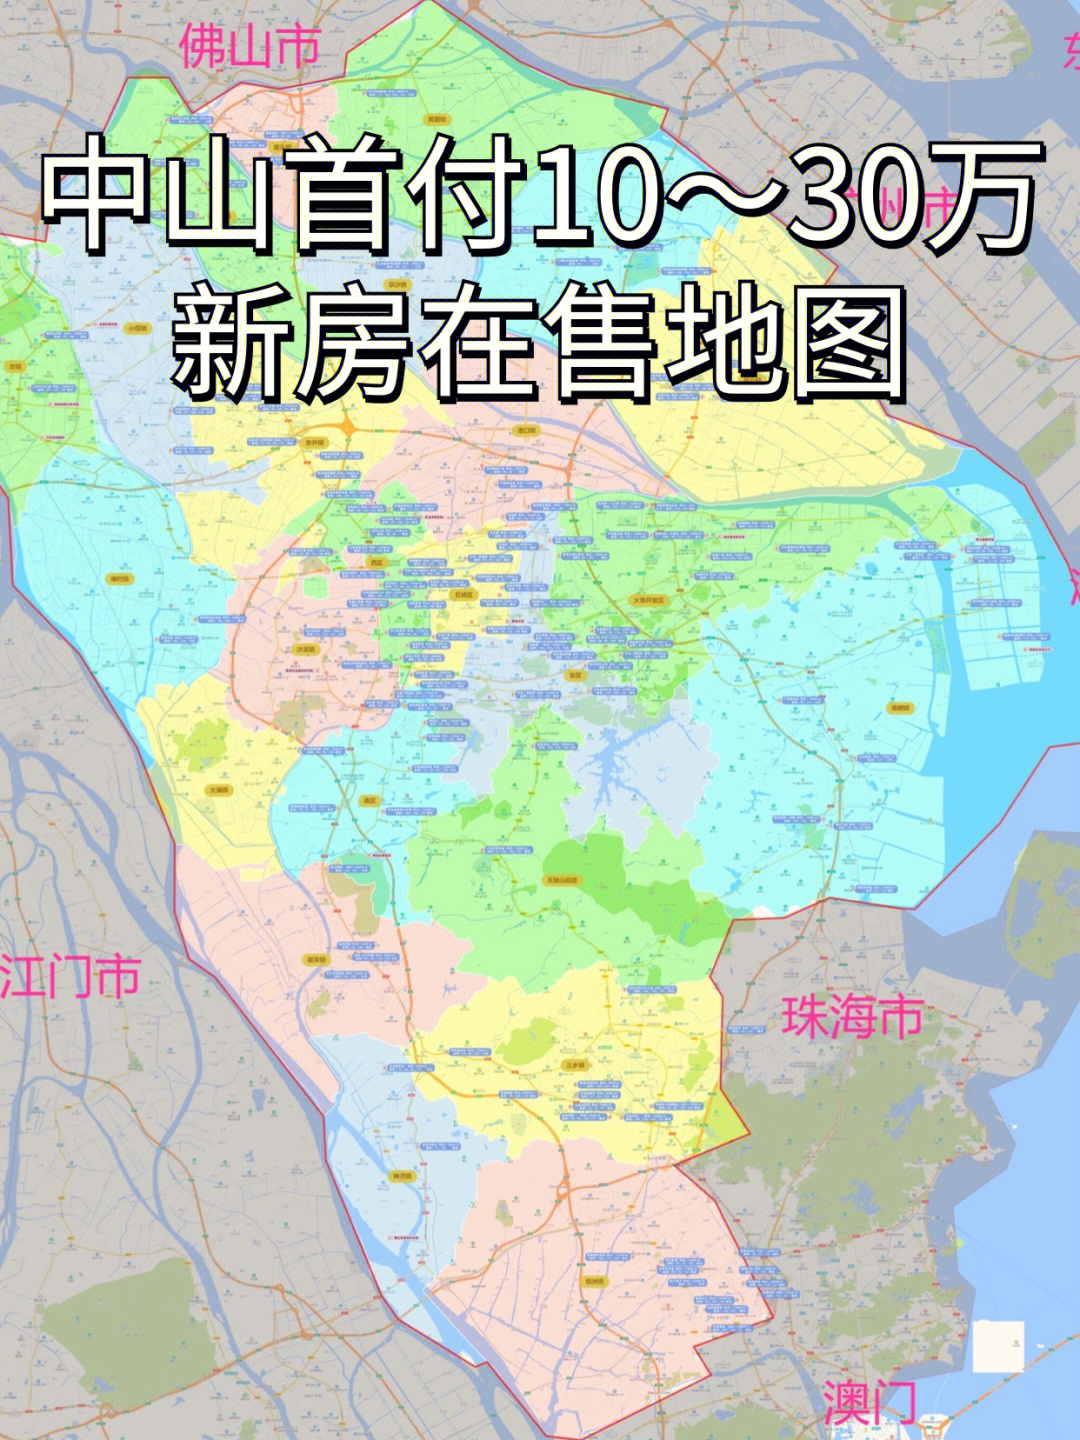 中山市地图 镇区图片